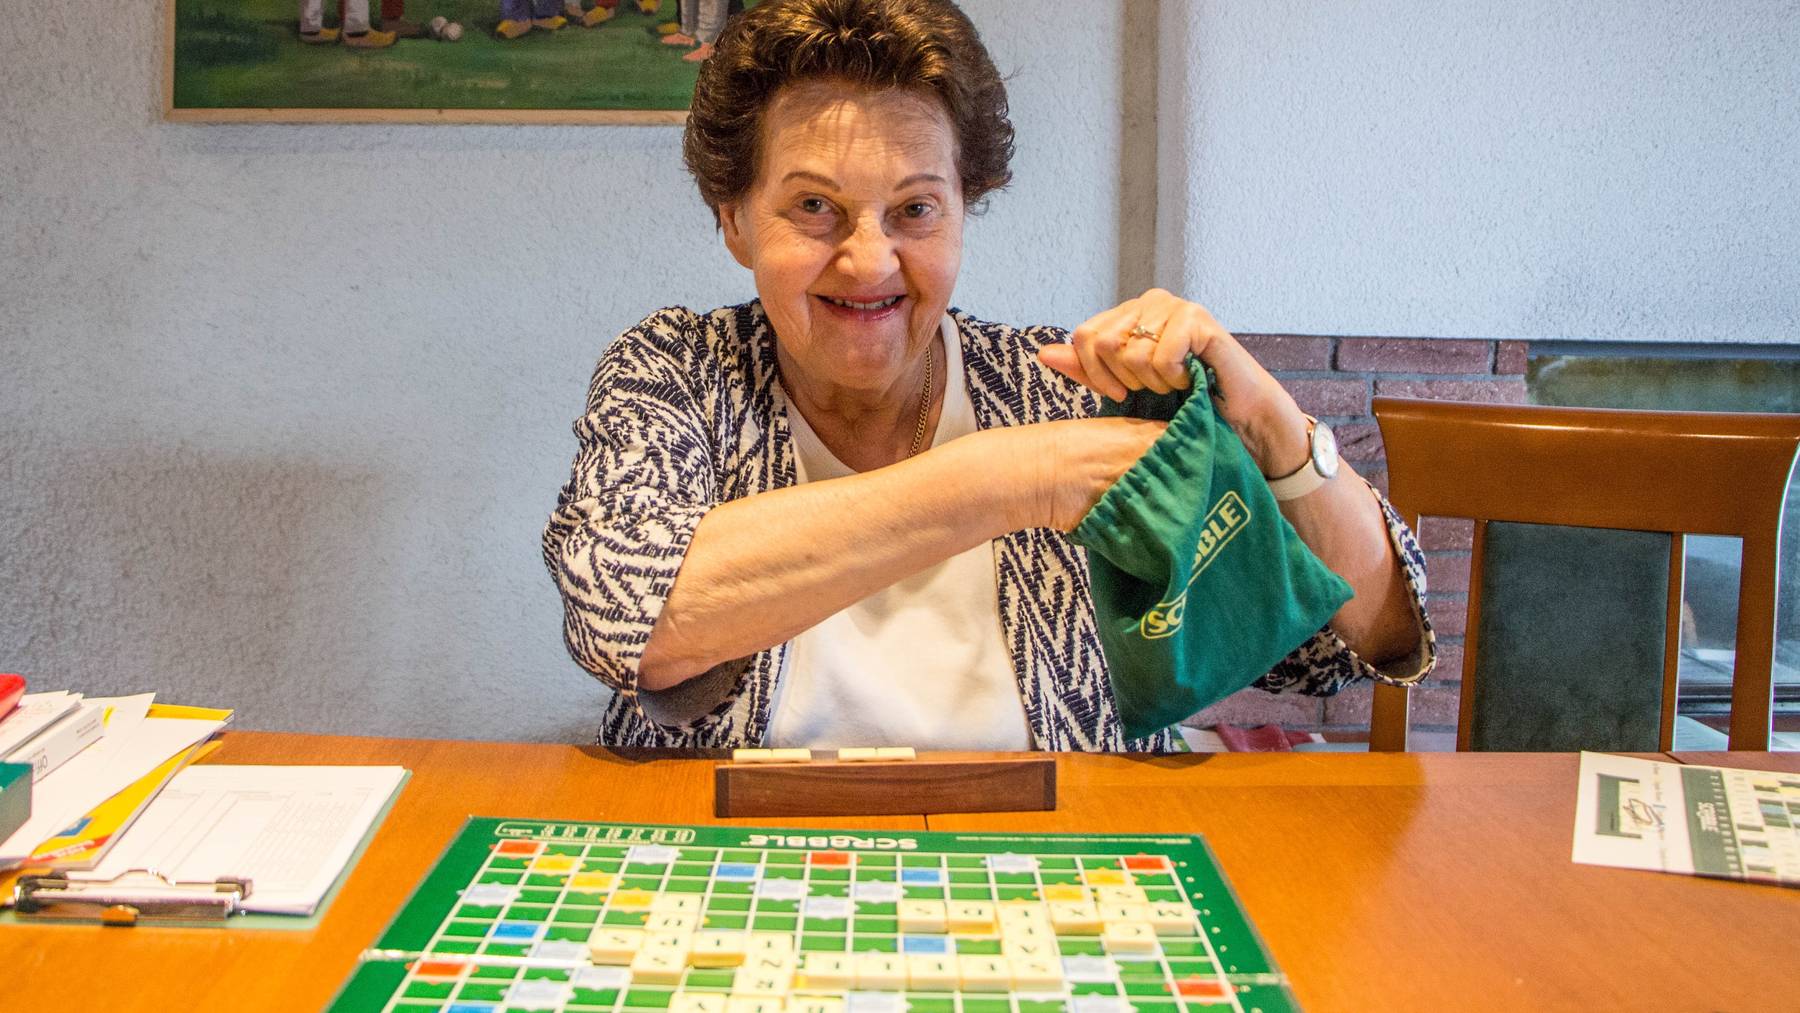 Blanca Gröbli-Canonica hat einen riesigen Wortschatz, der sie zu einer der besten Scrabble-Turnierspielerinnen macht.